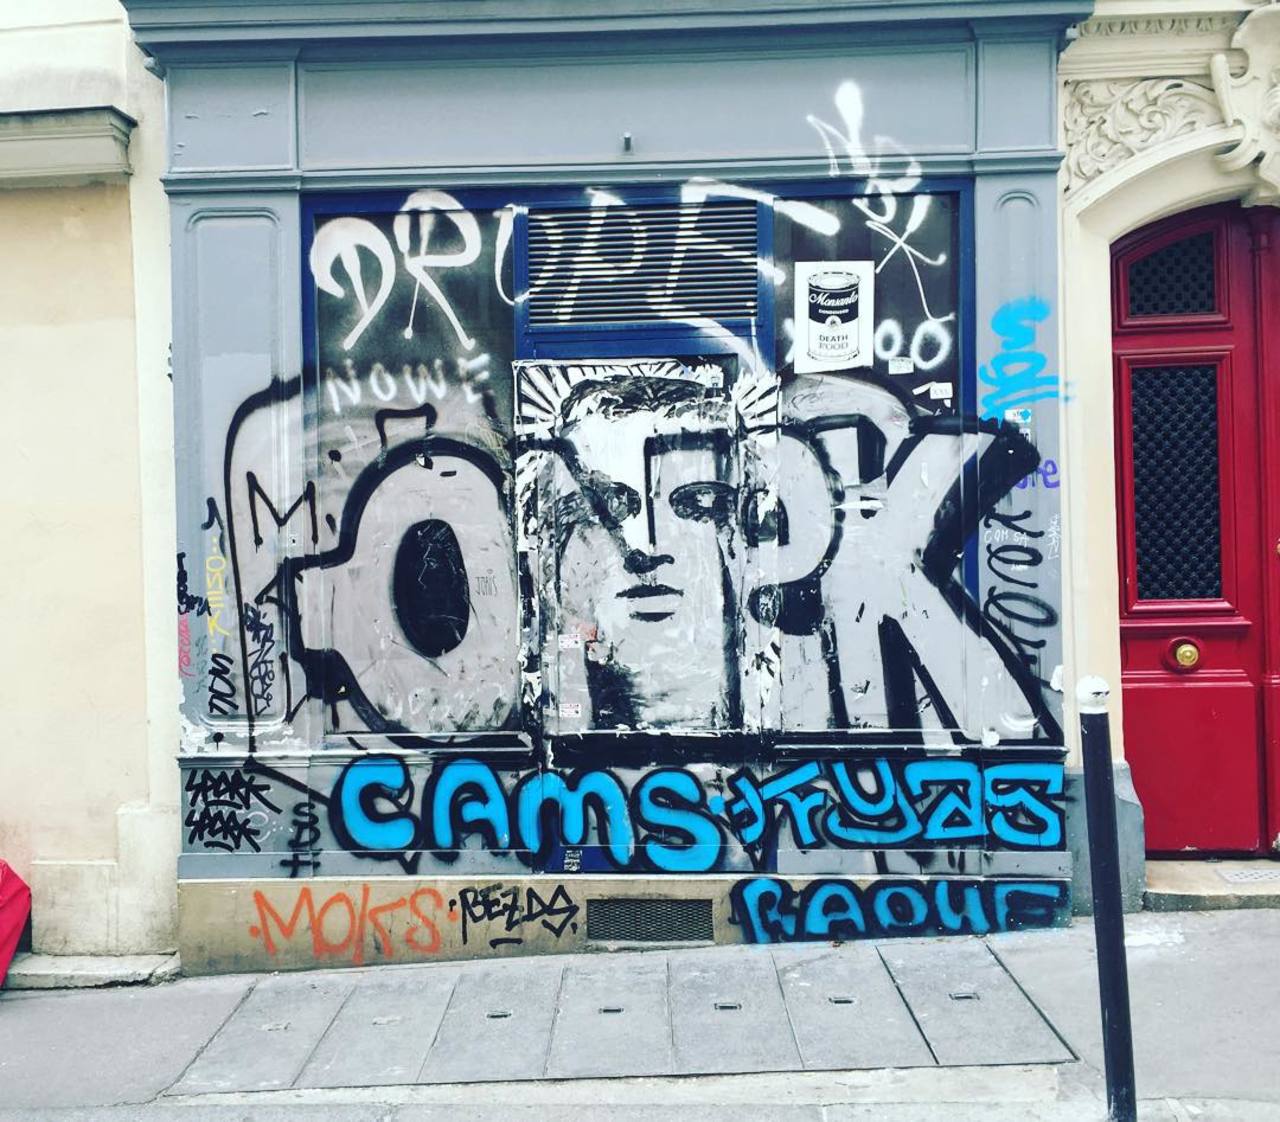 circumjacent_fr: #Paris #graffiti photo by galifreund http://ift.tt/1MYaPMD #StreetArt https://t.co/ZYn5kAf03J